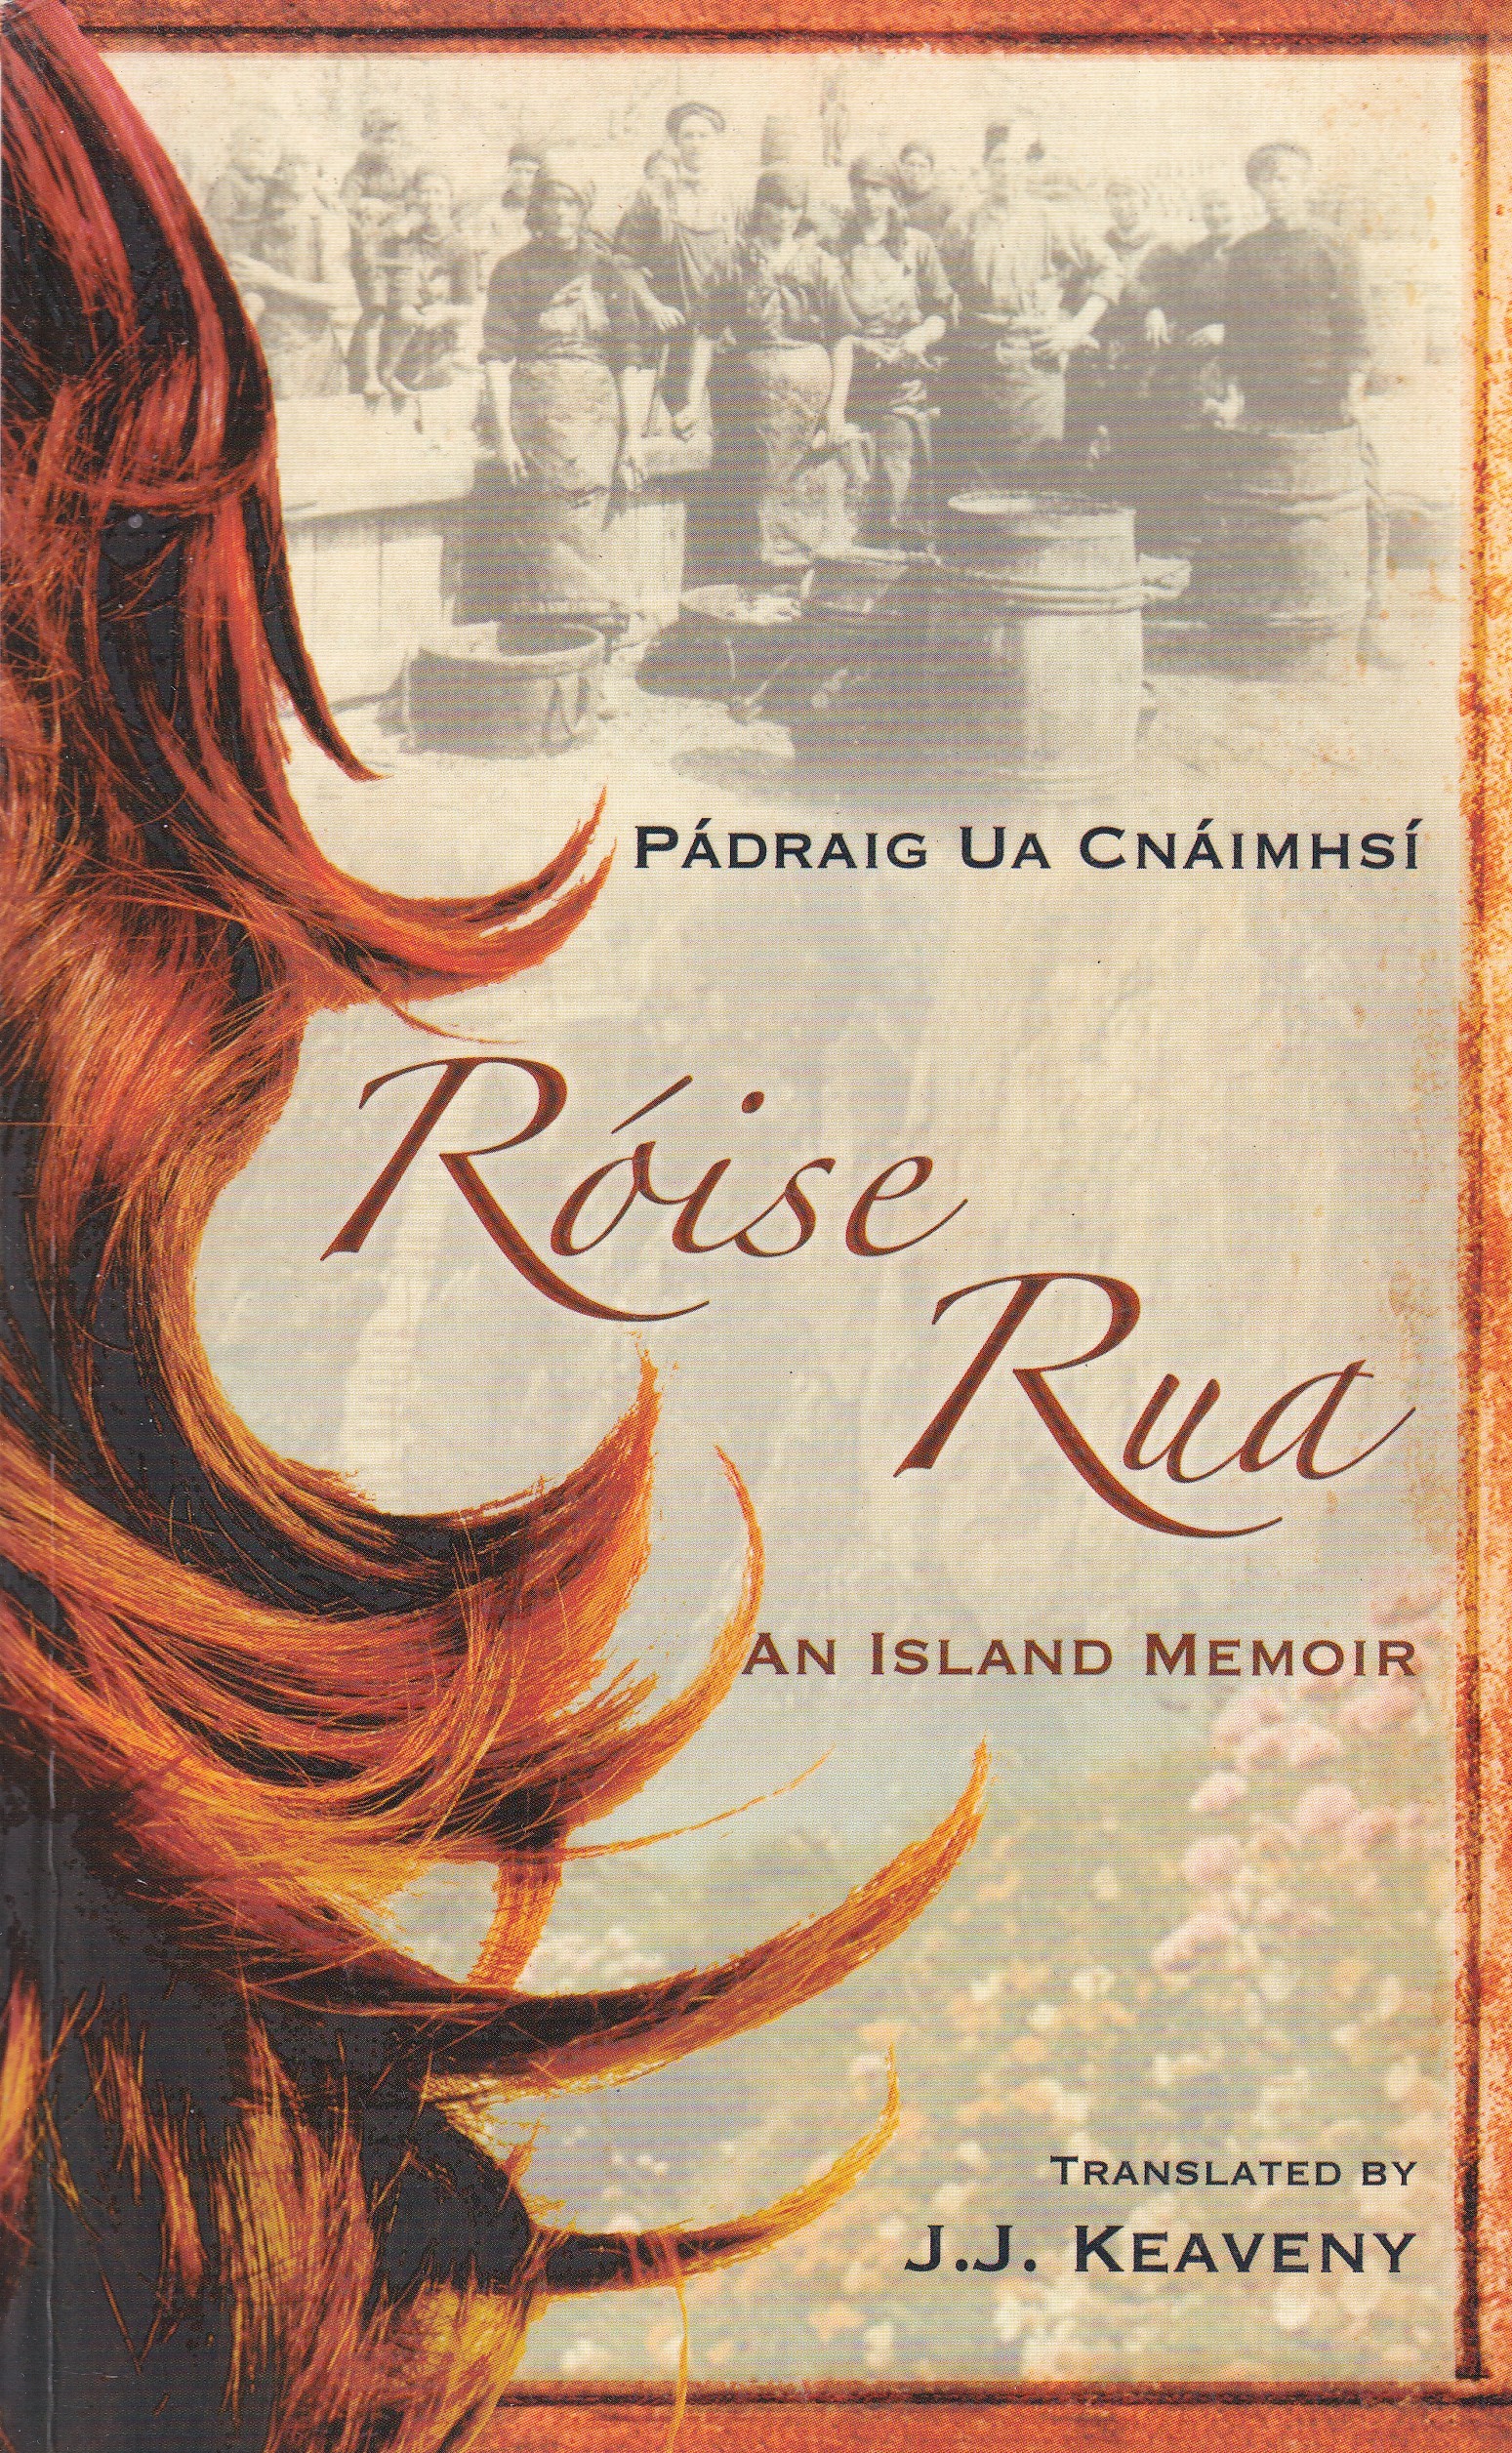 Róise Rua: An Island Memoir by Pádraig Ua Cnáimhsí